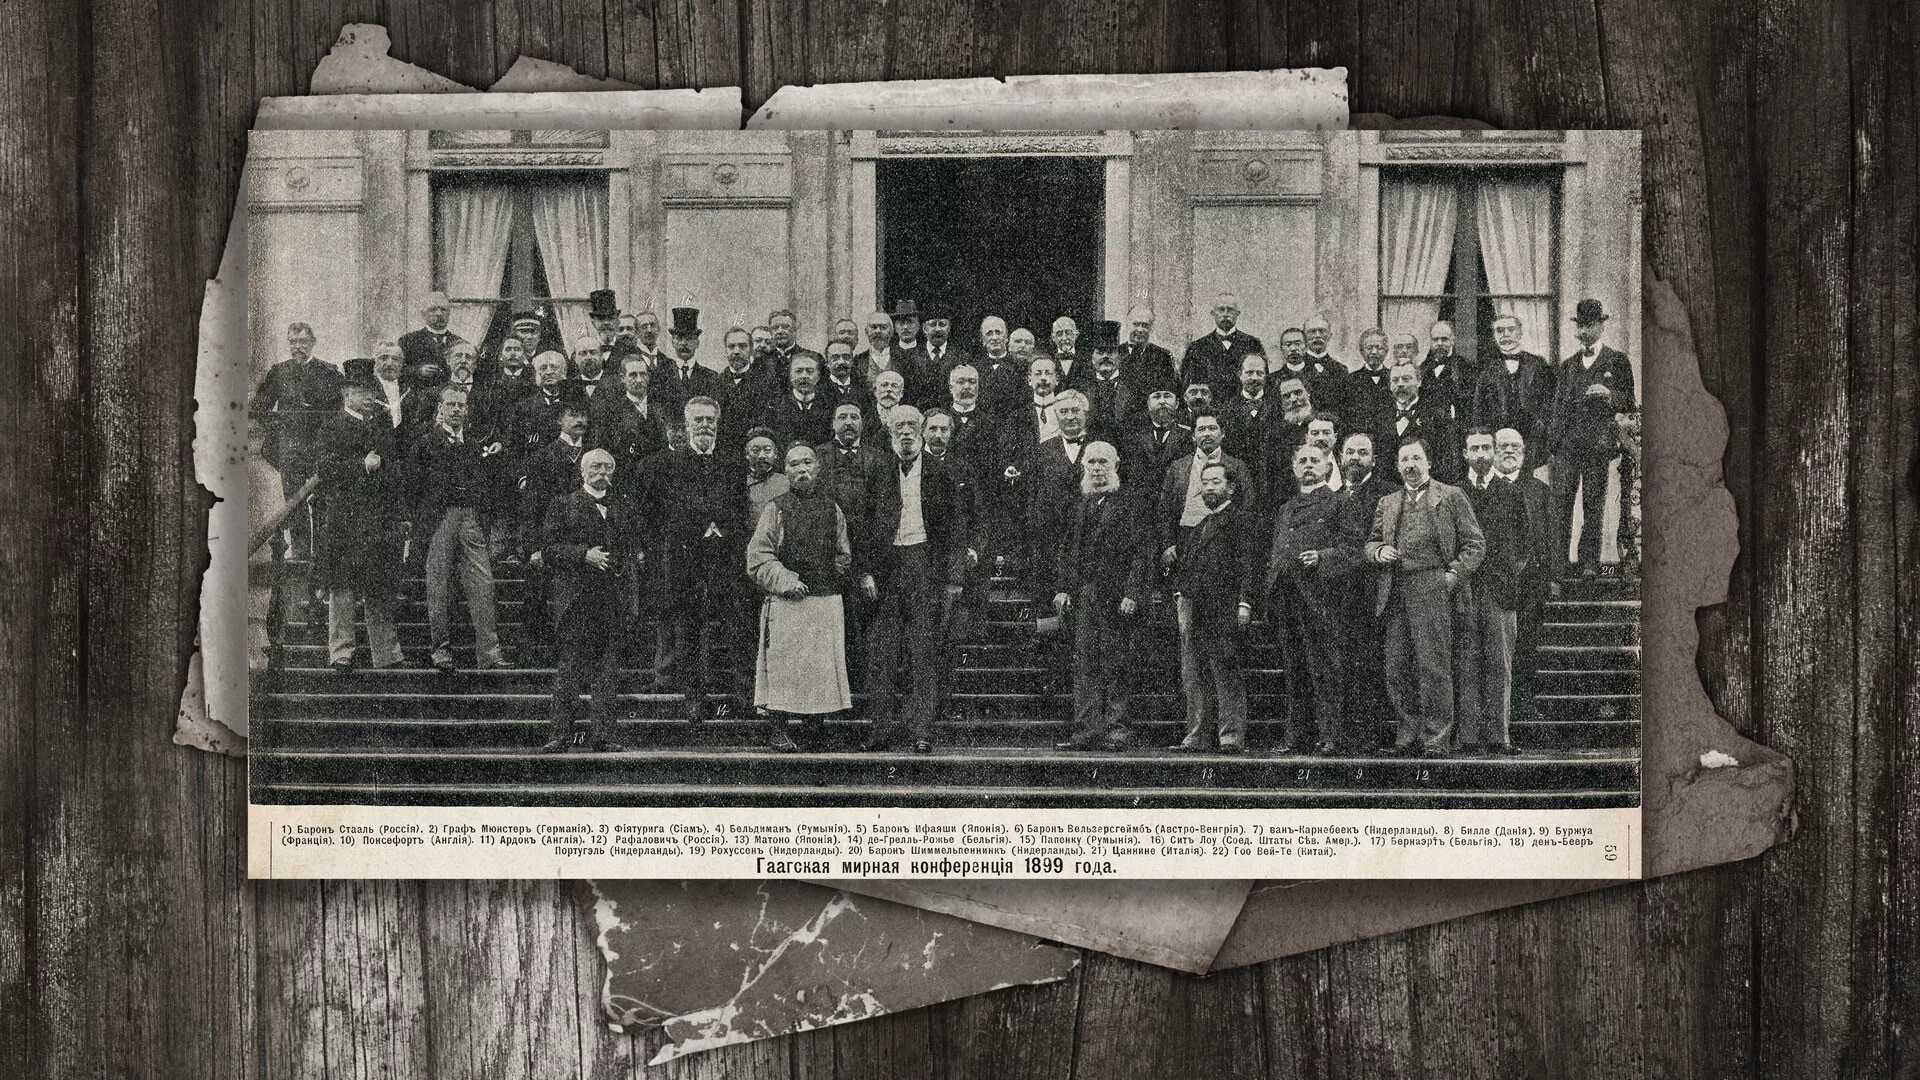 Гаагские мирные конференции 1899 и 1907. Гаагская Мирная конференция 1907. Международная конференция в гааге